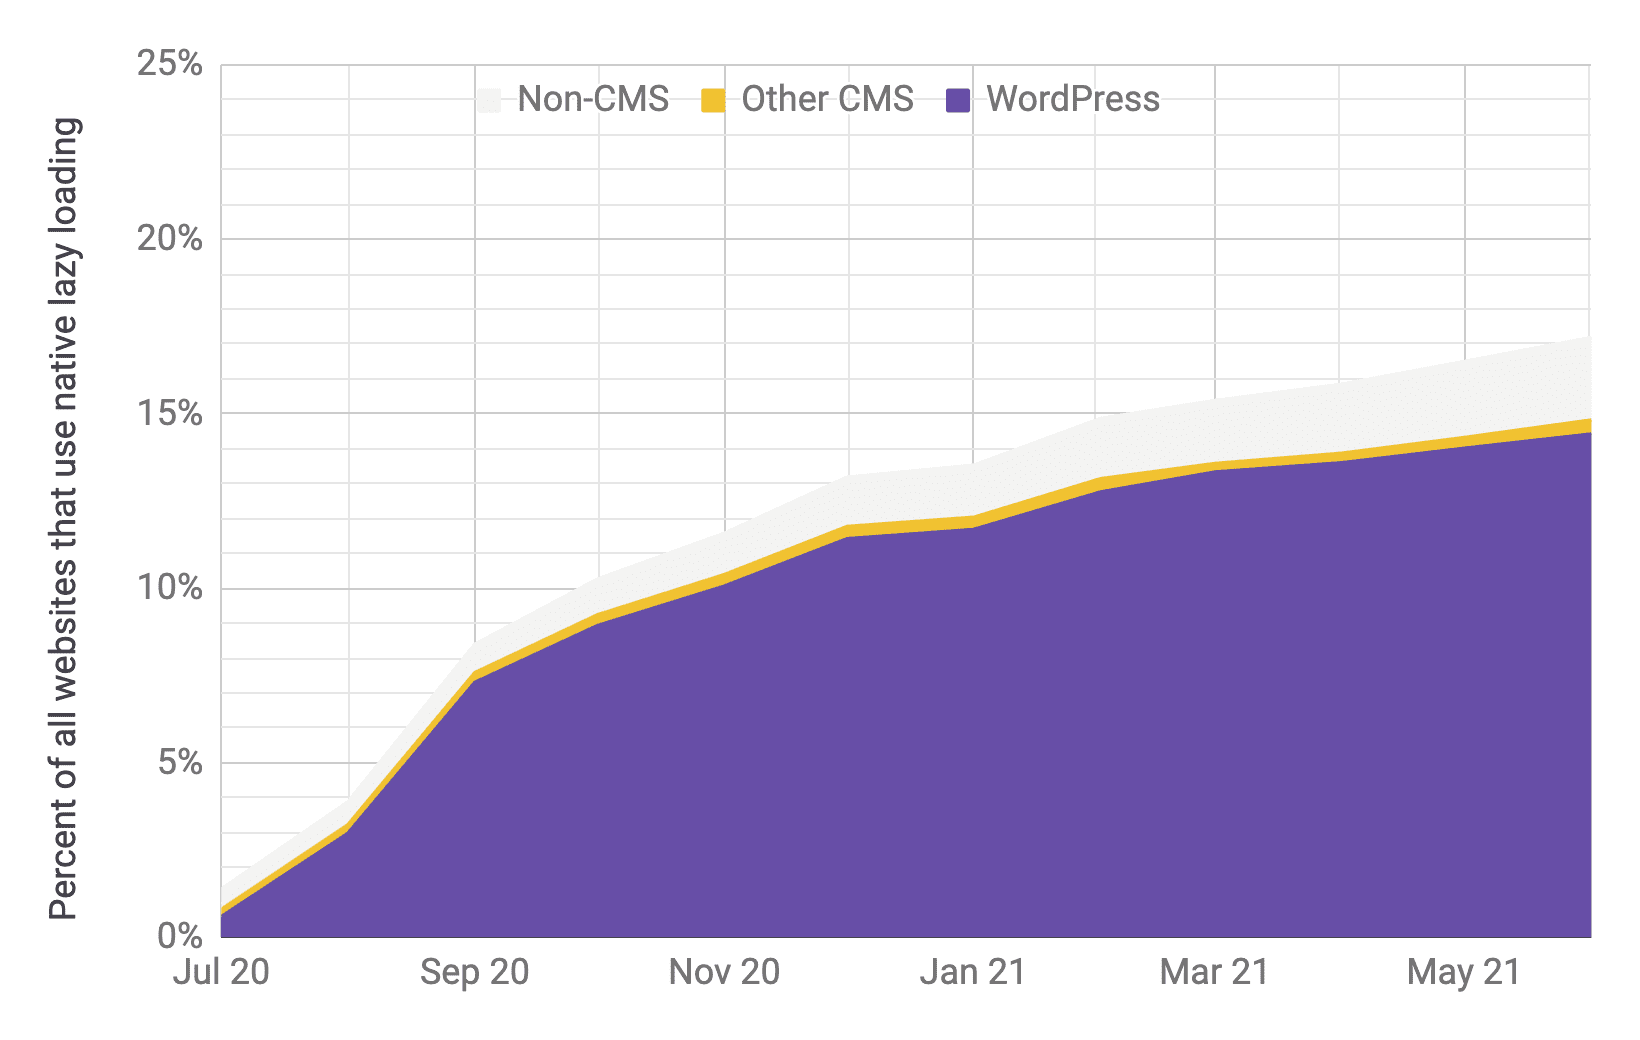 延迟加载采用率的时间序列图表，其中 WordPress 是主要播放器（与其他 CMS 和非 CMS 相比），比例与上一个图表类似。数据显示，从 2020 年 7 月到 2021 年 6 月，总体采用率从 1% 快速增加到 17%。